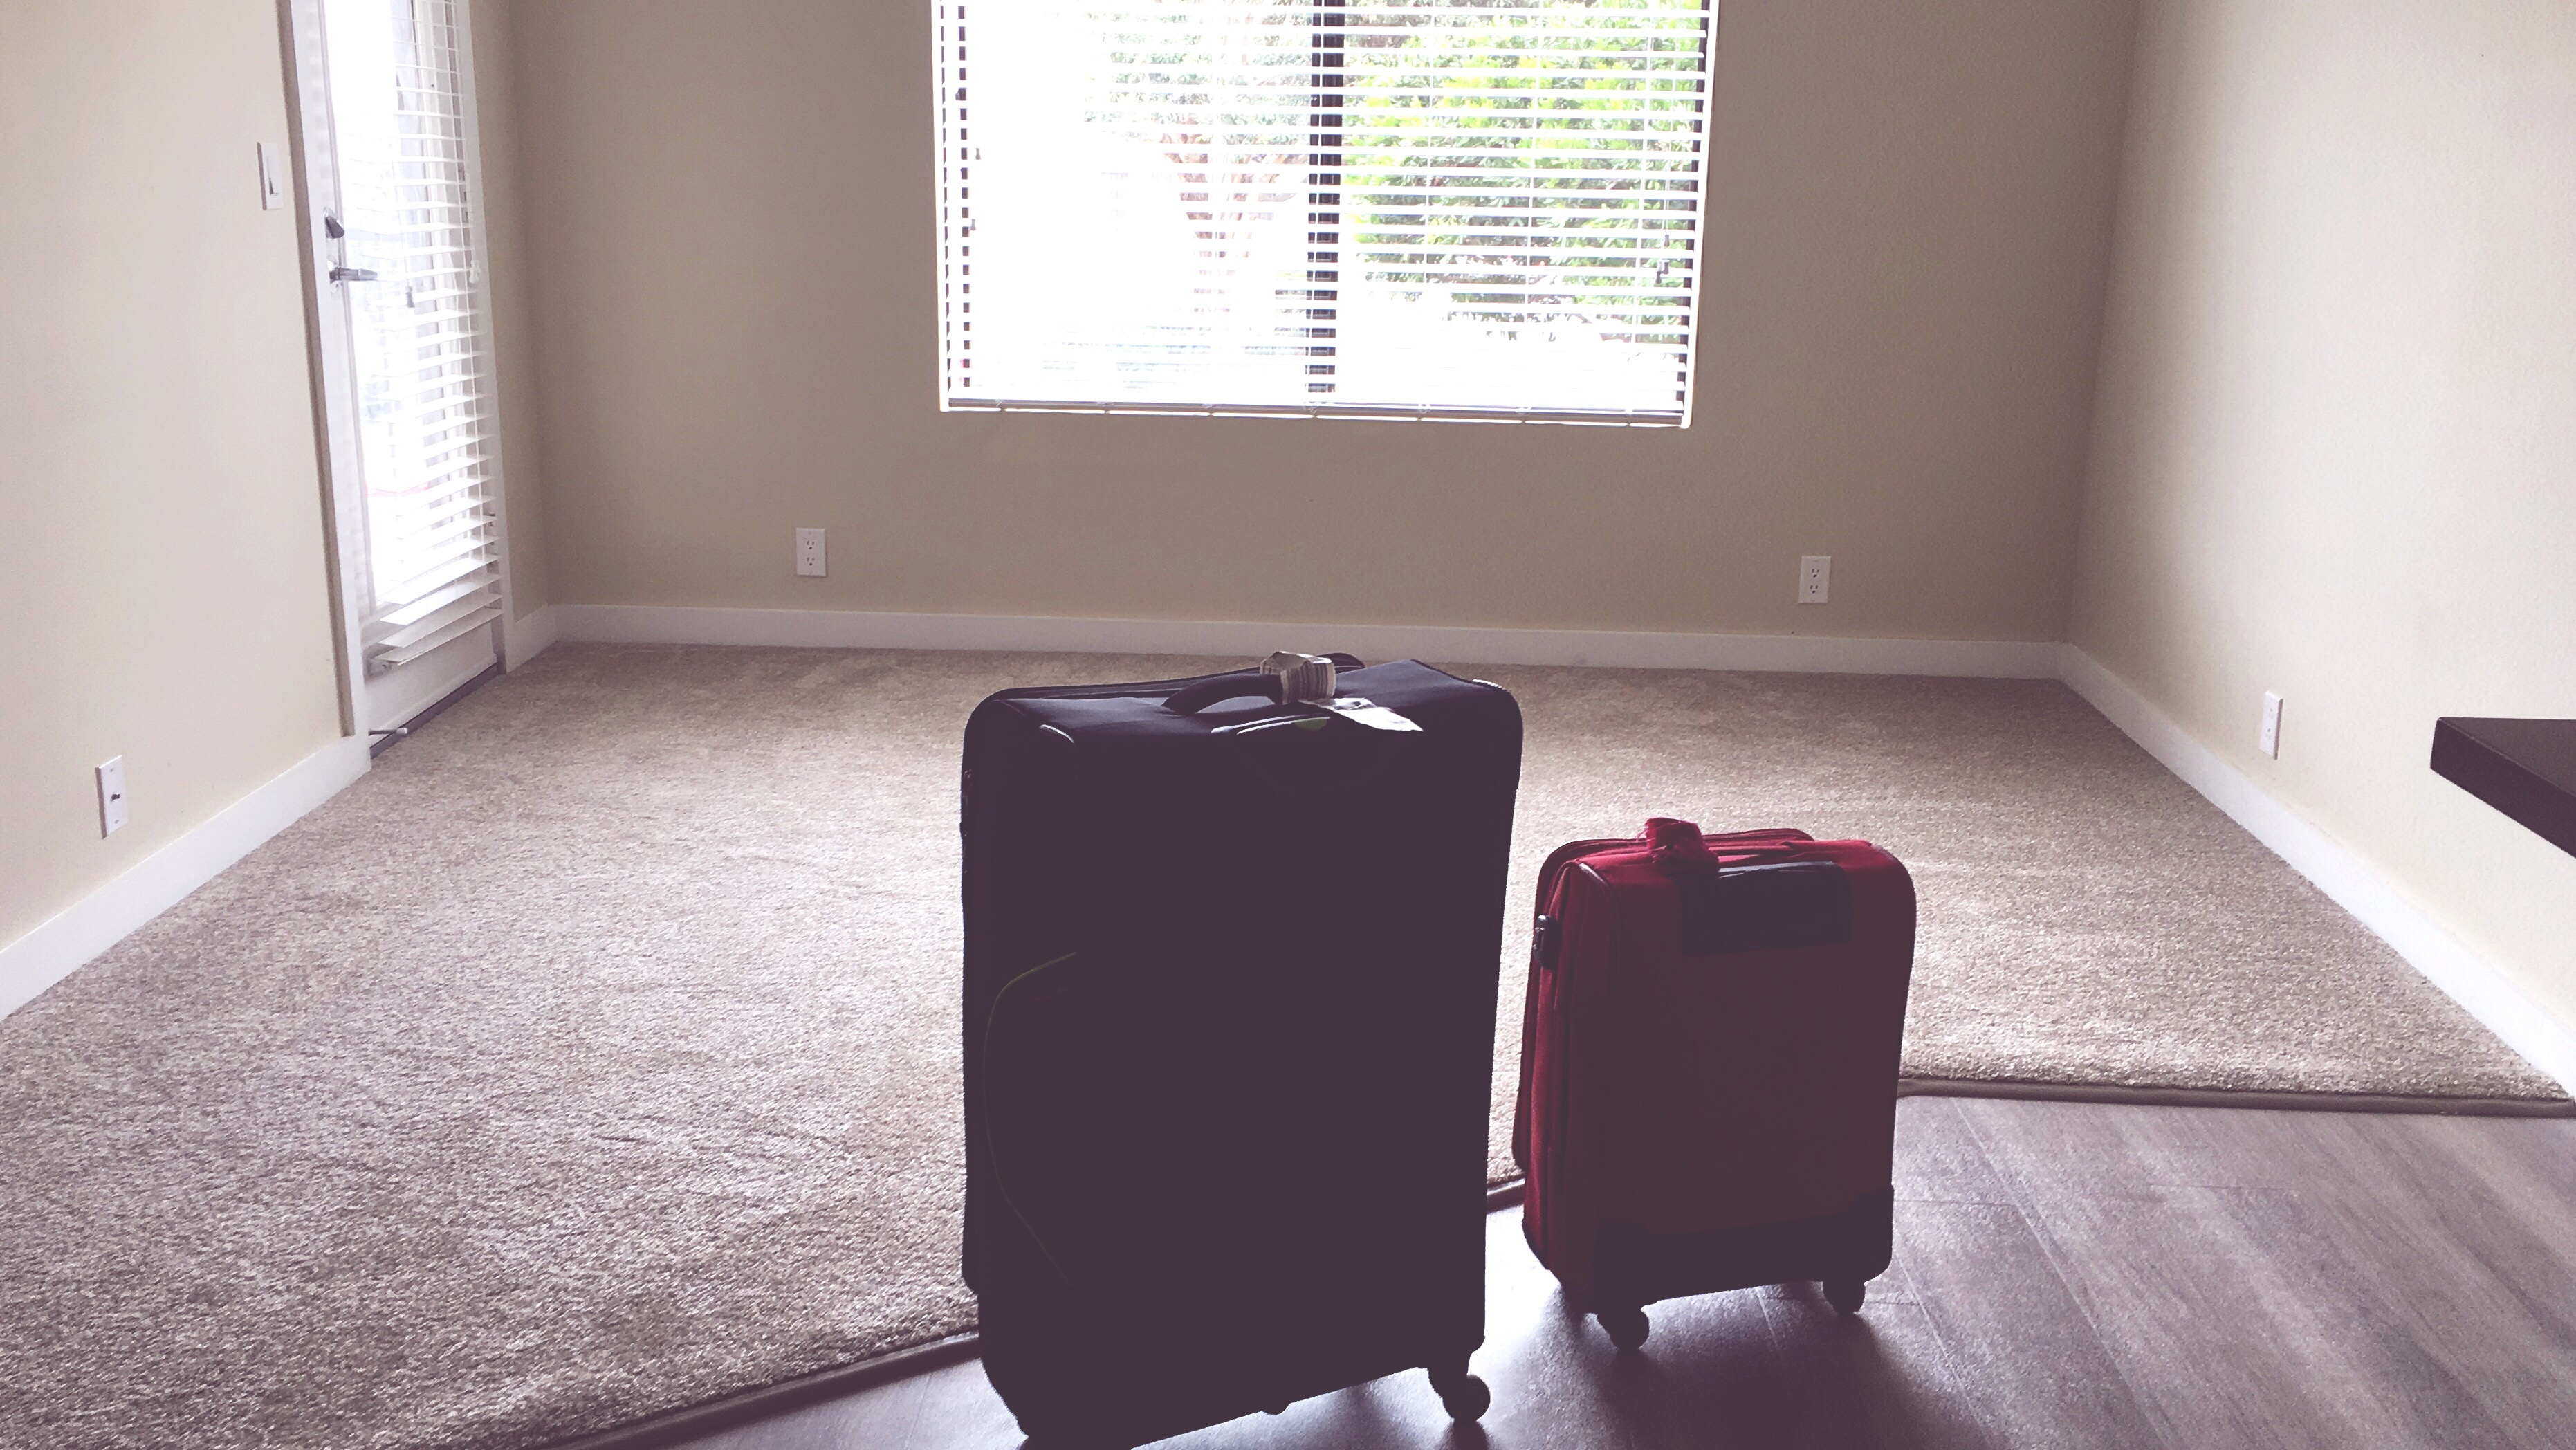 Luggage On Floor